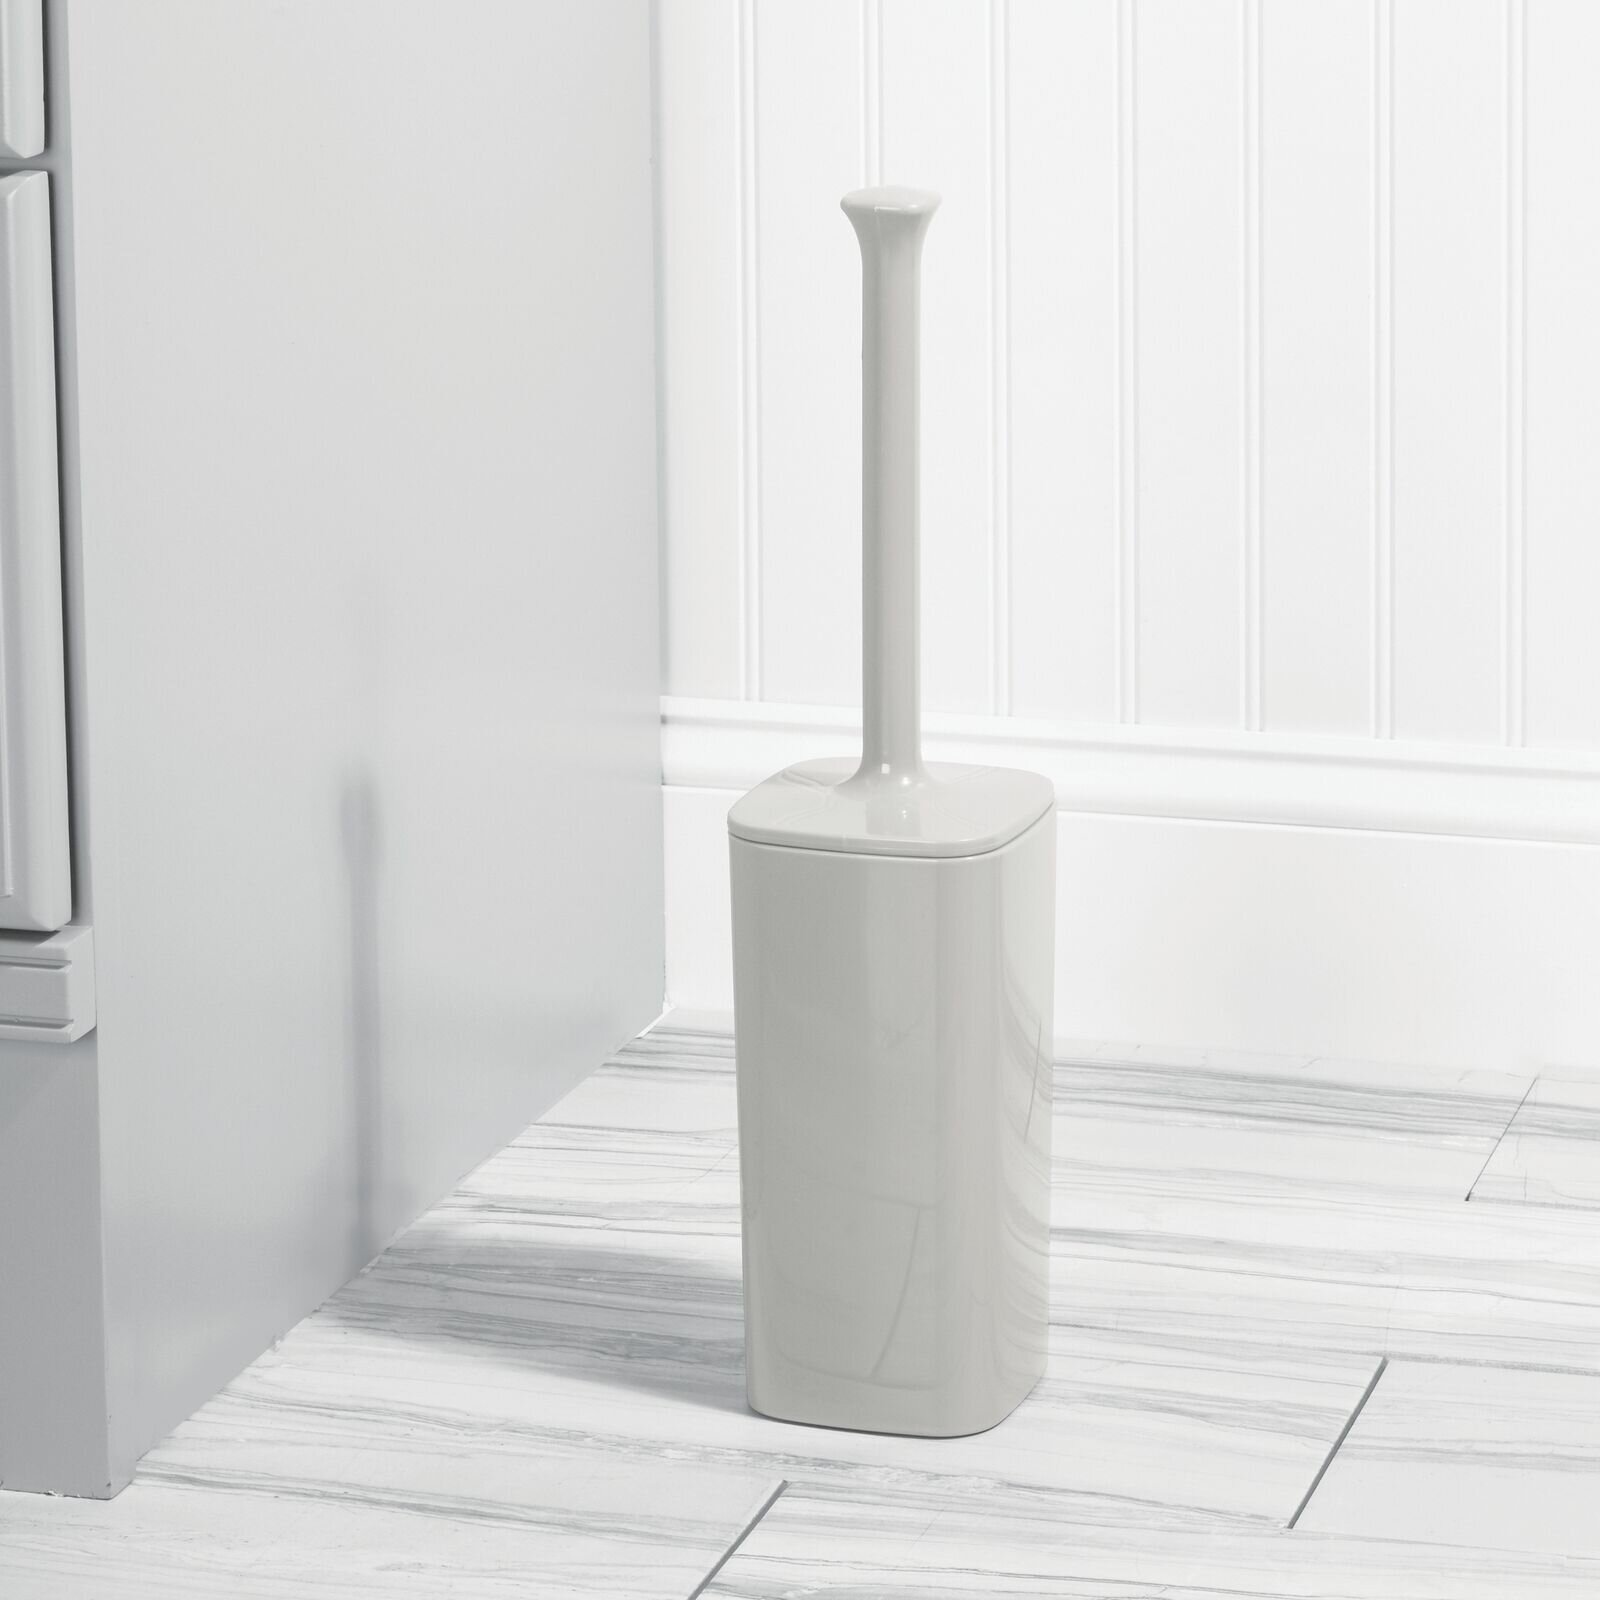 mDesign Square Plastic Toilet Bowl Brush and Holder Black 2 Pack 